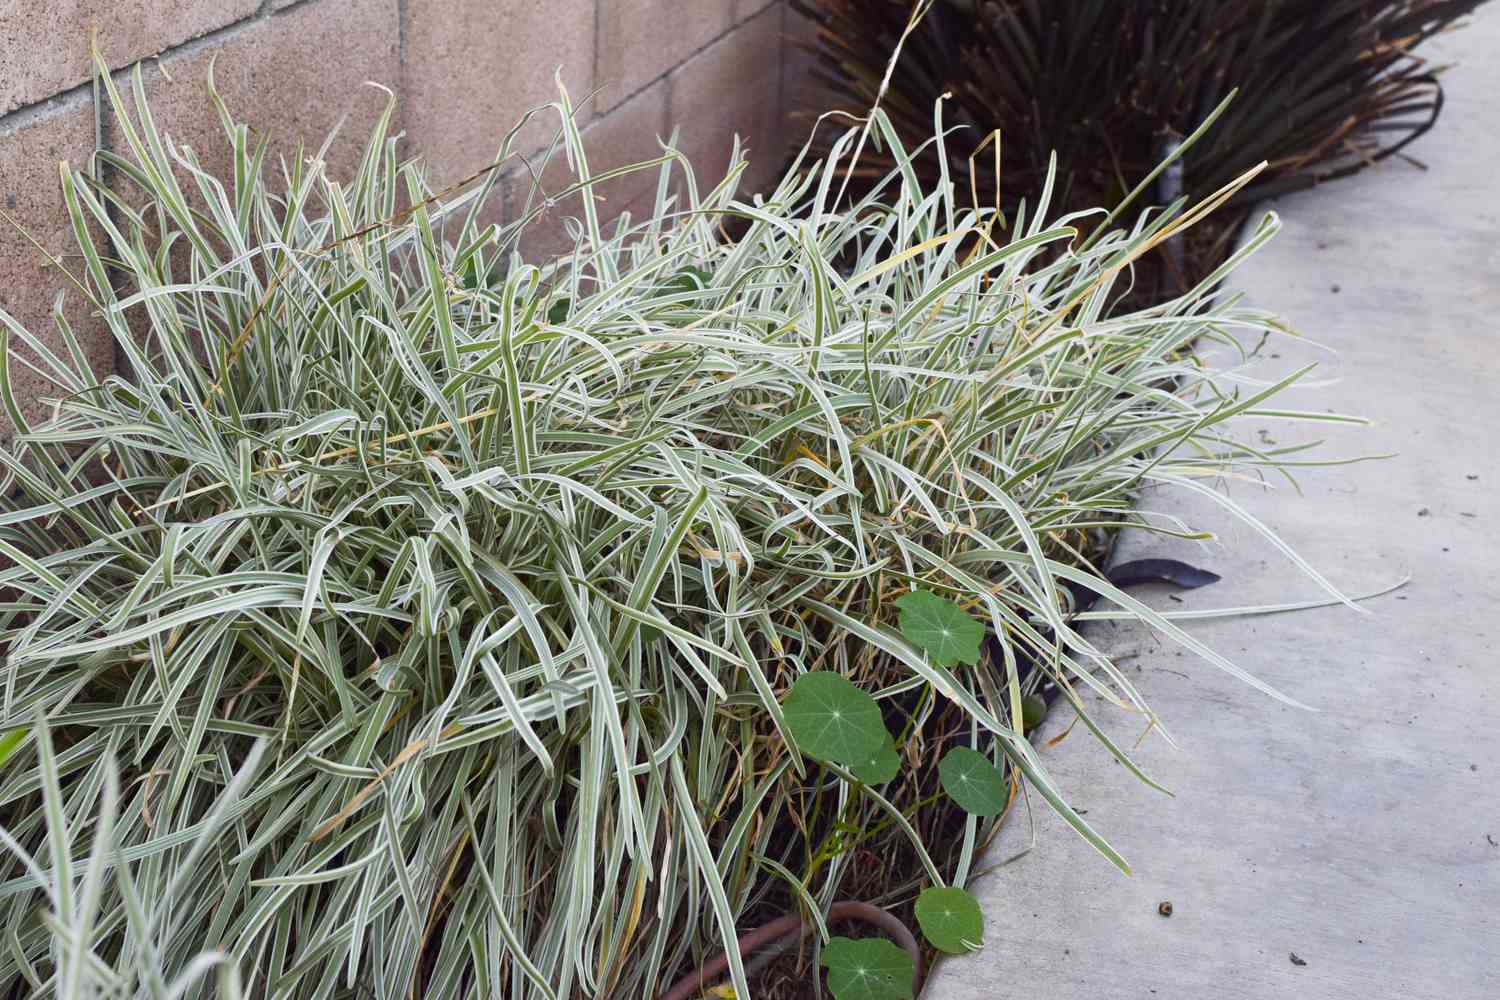 Gesellschaftsknoblauchpflanze mit hellgrünen grasähnlichen Blättern neben Zement verklumpt